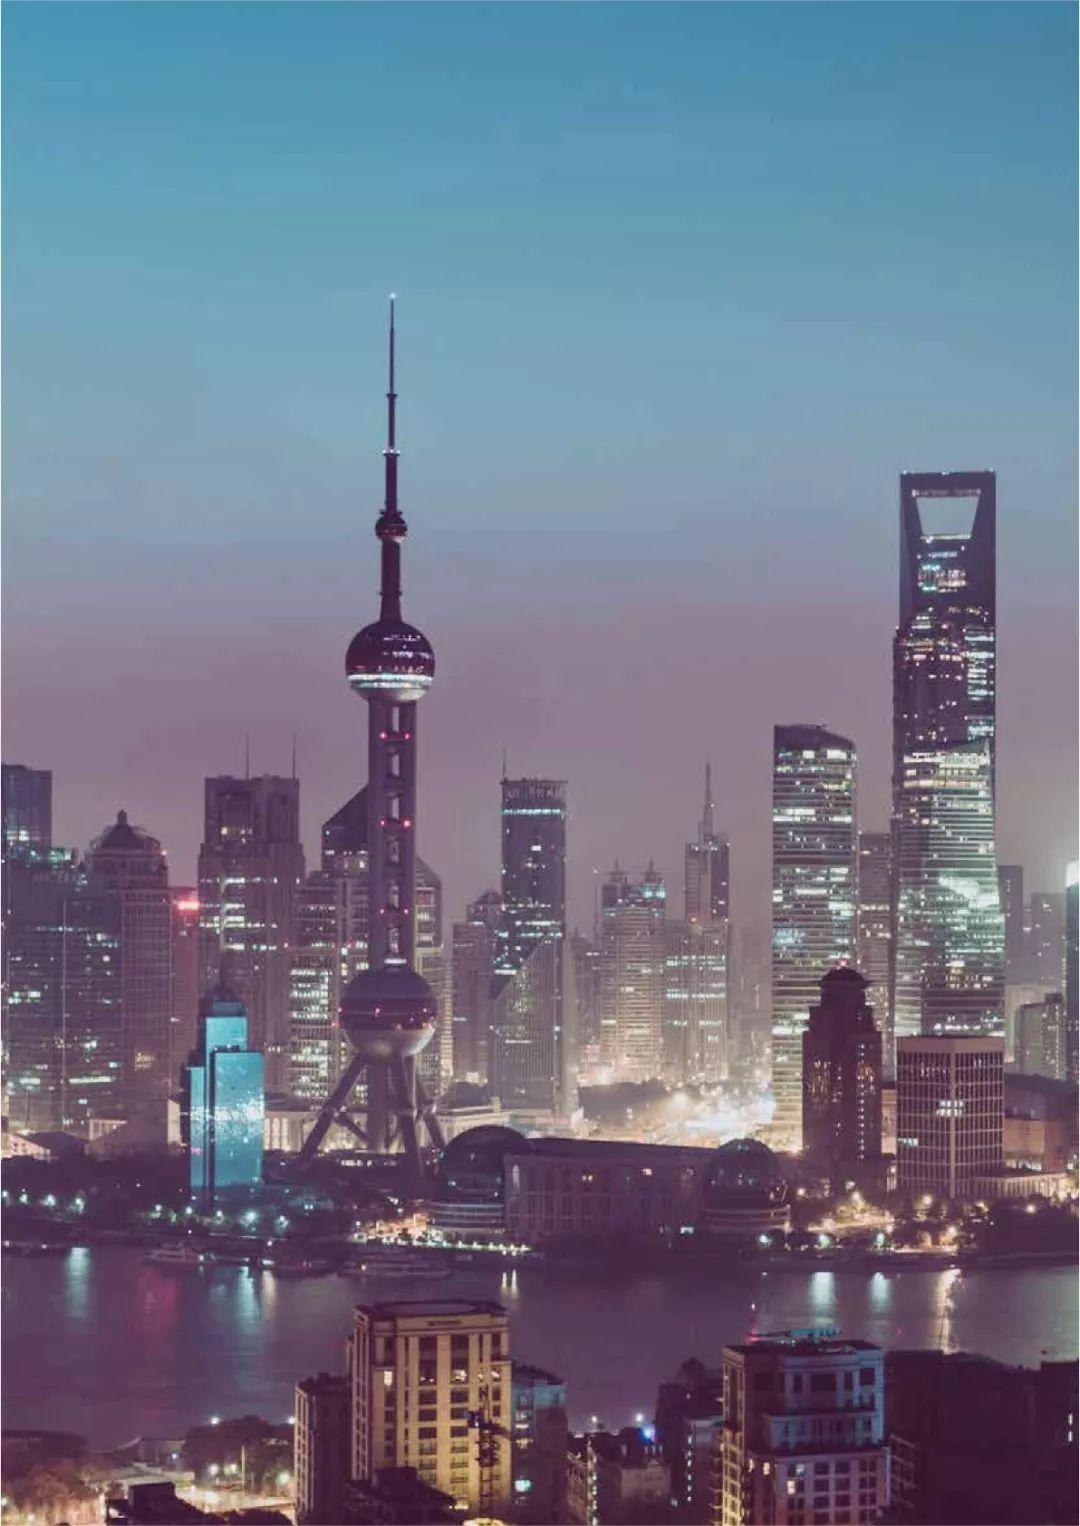 2019年中国银行业调查报告（100页）